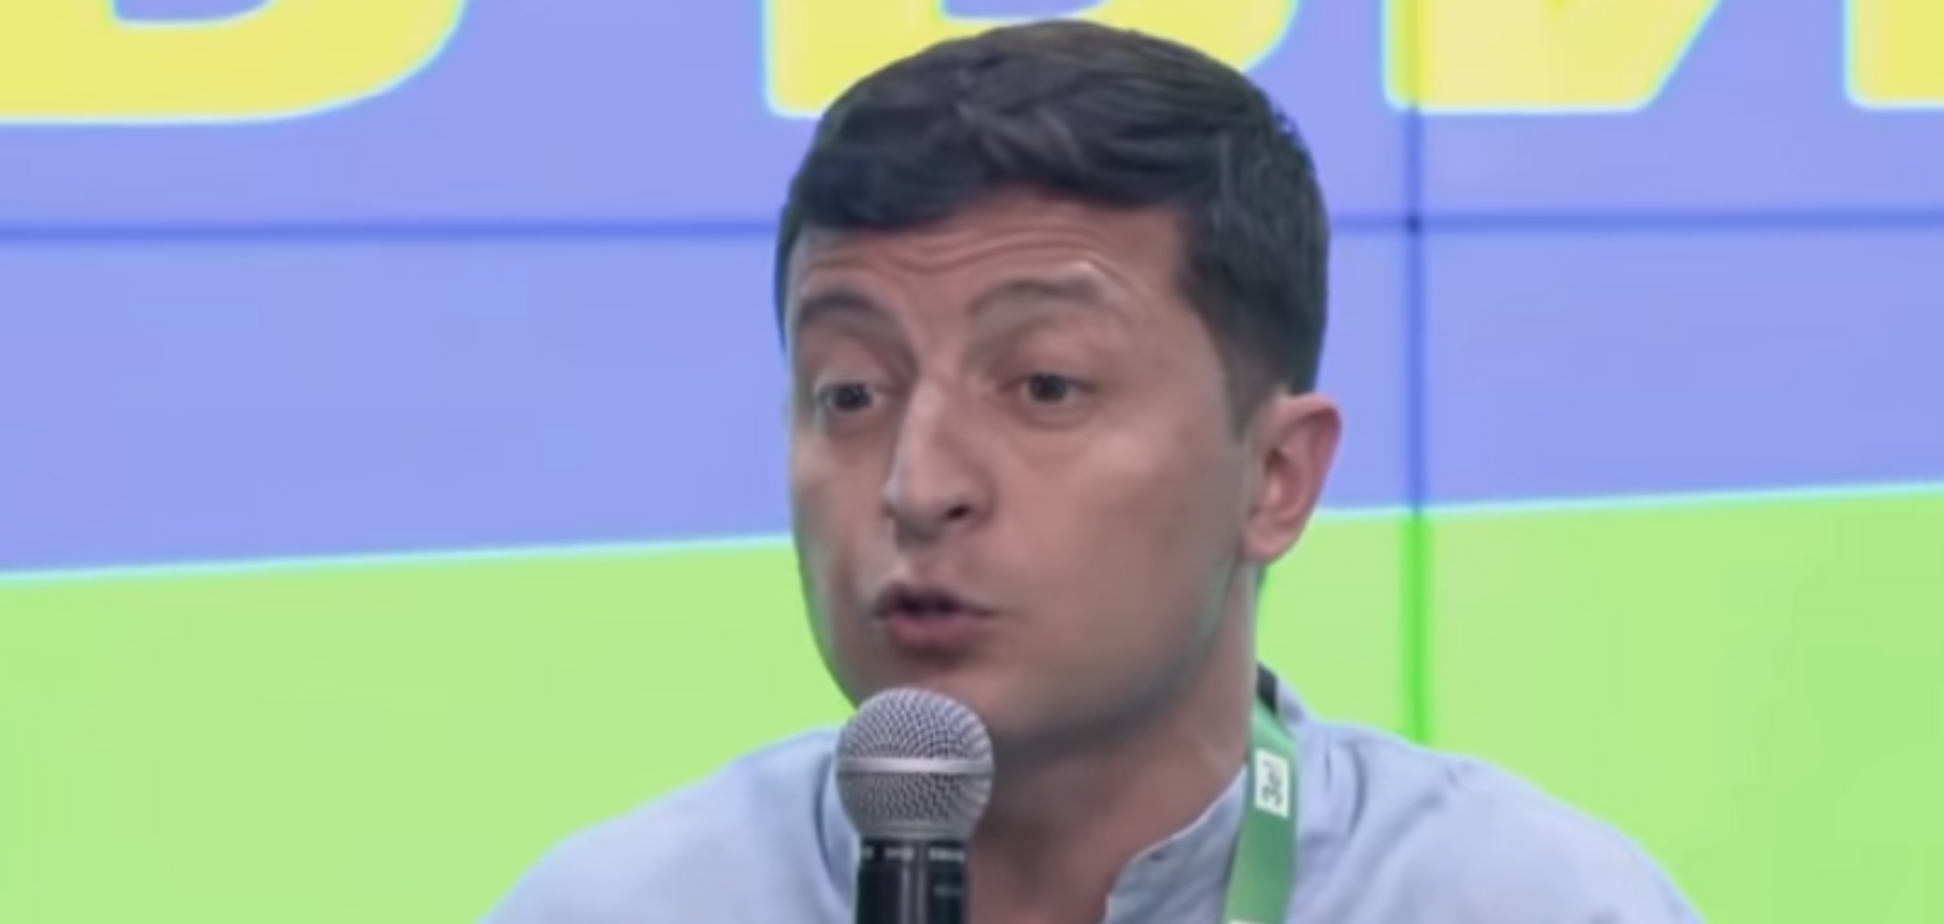 Зеленский согласился на интервью журналистам из России